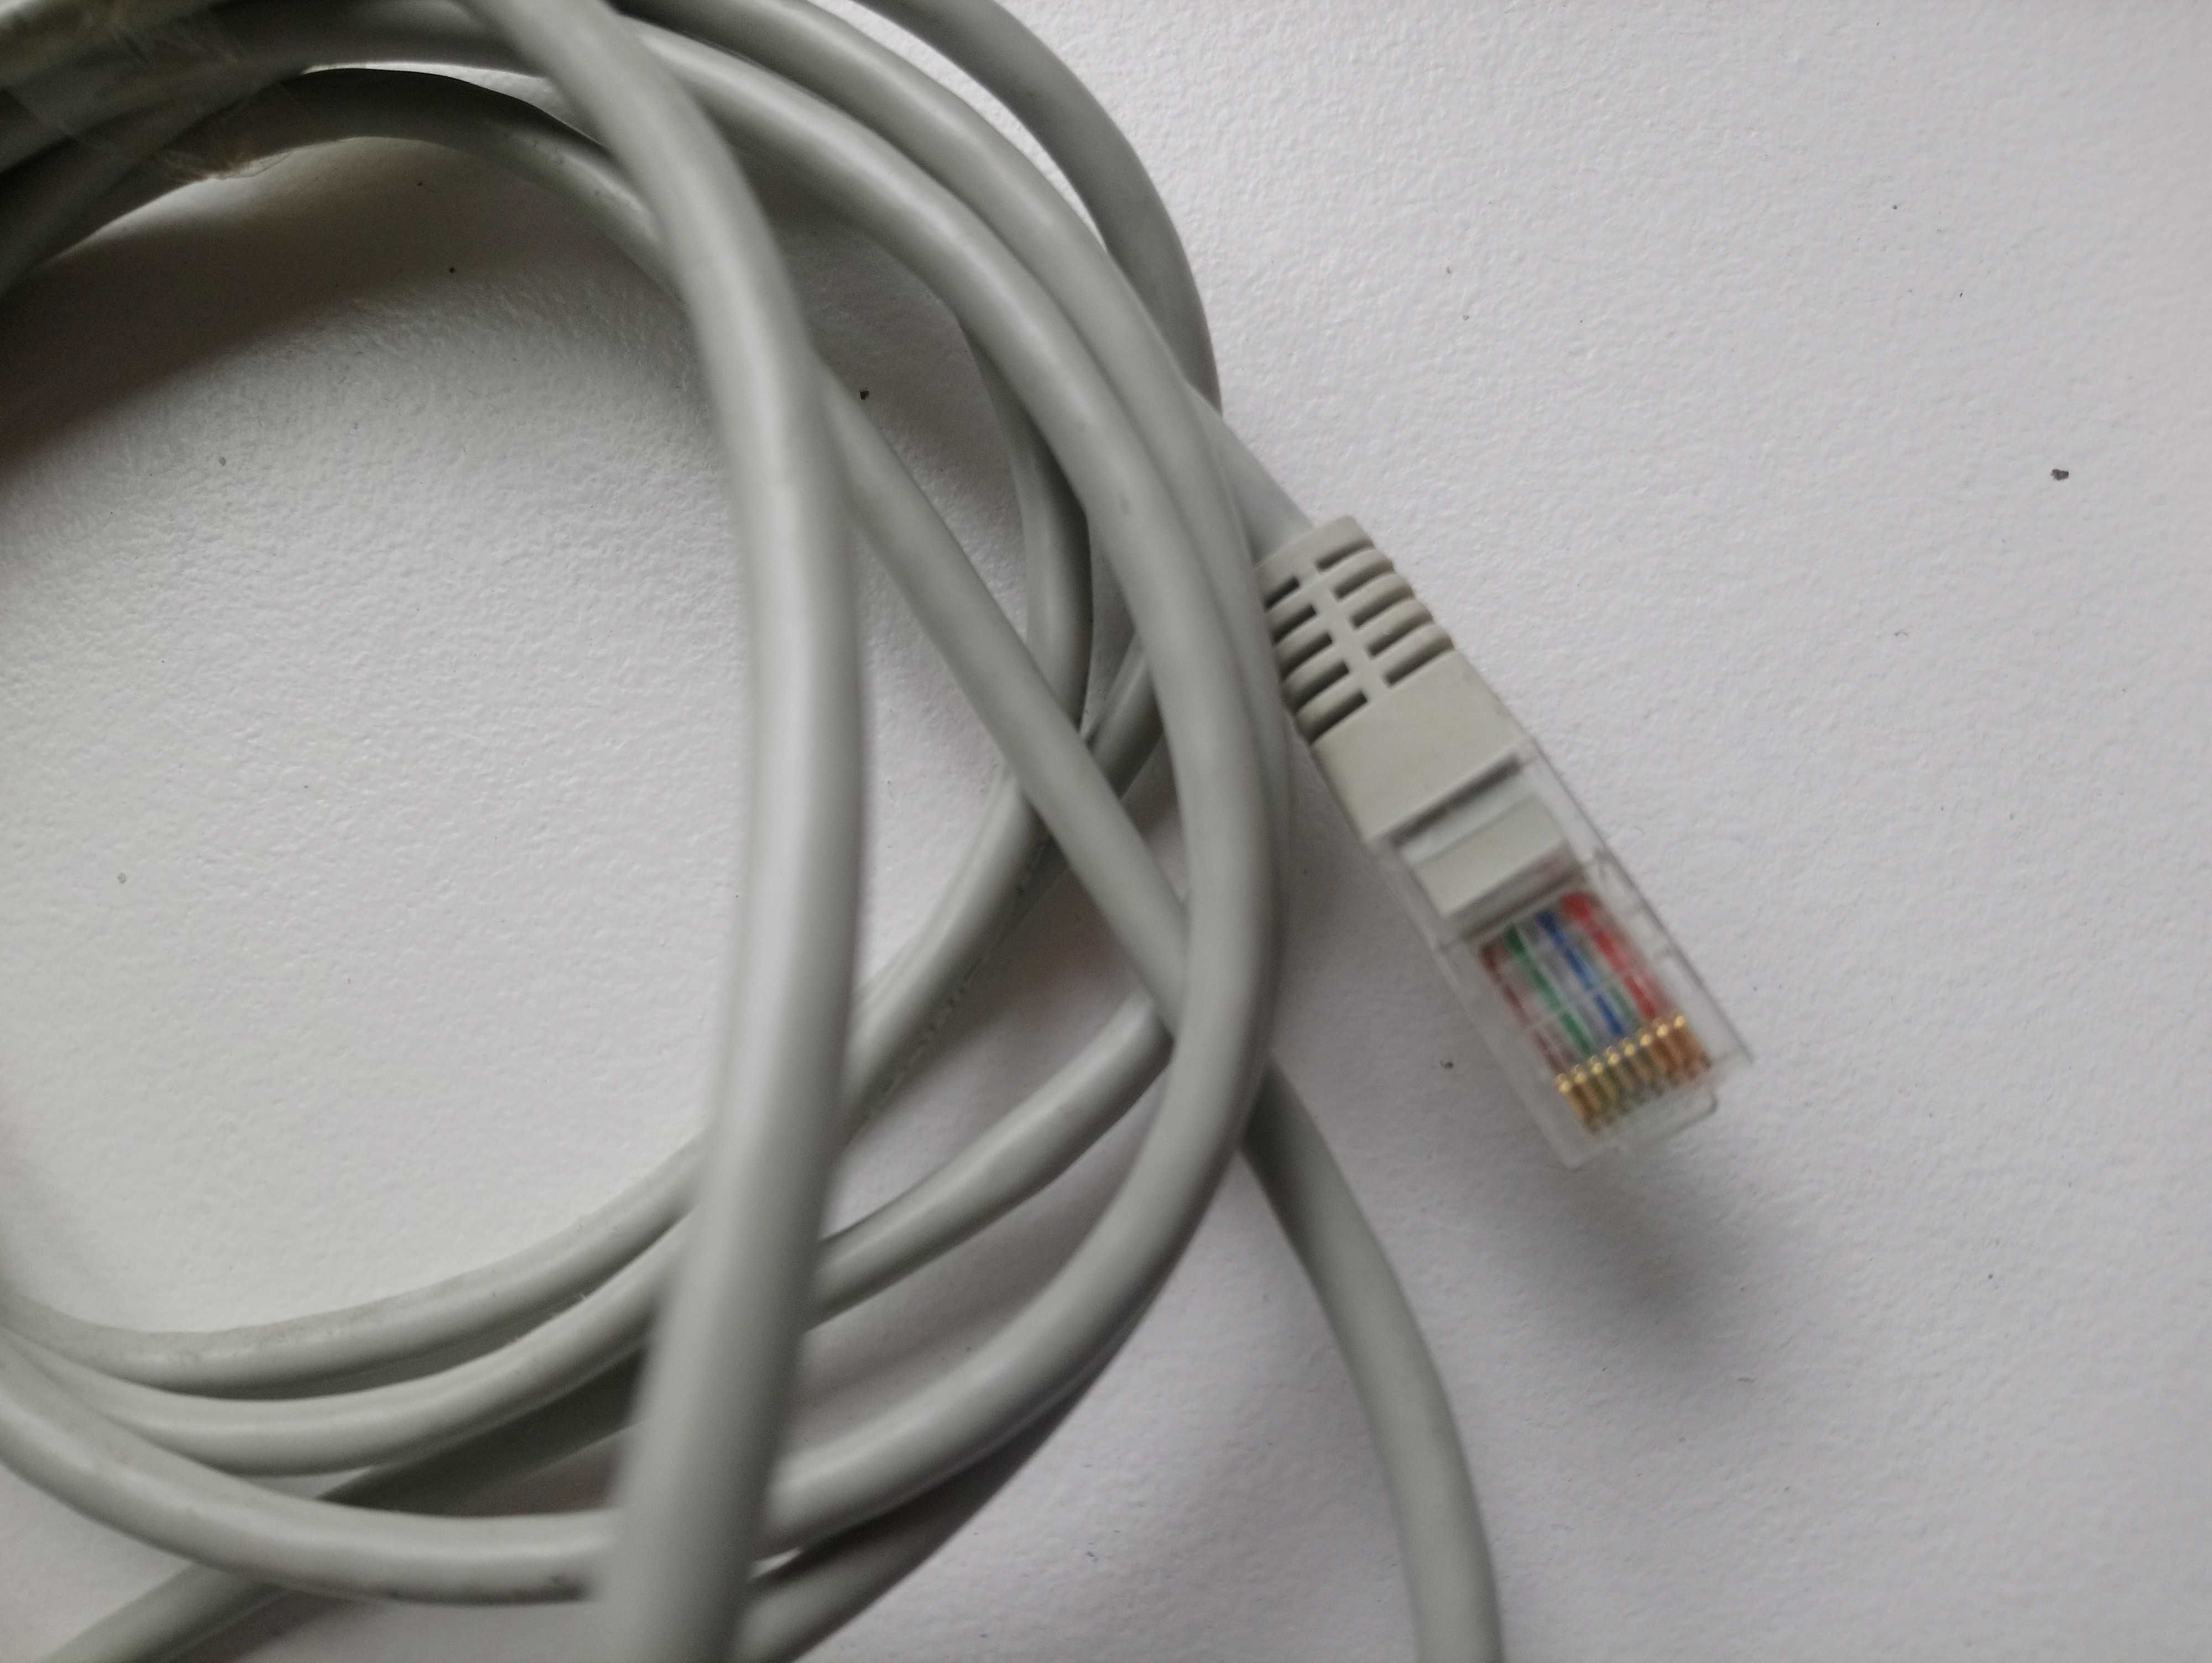 kable internetowe w zestawie różne długości